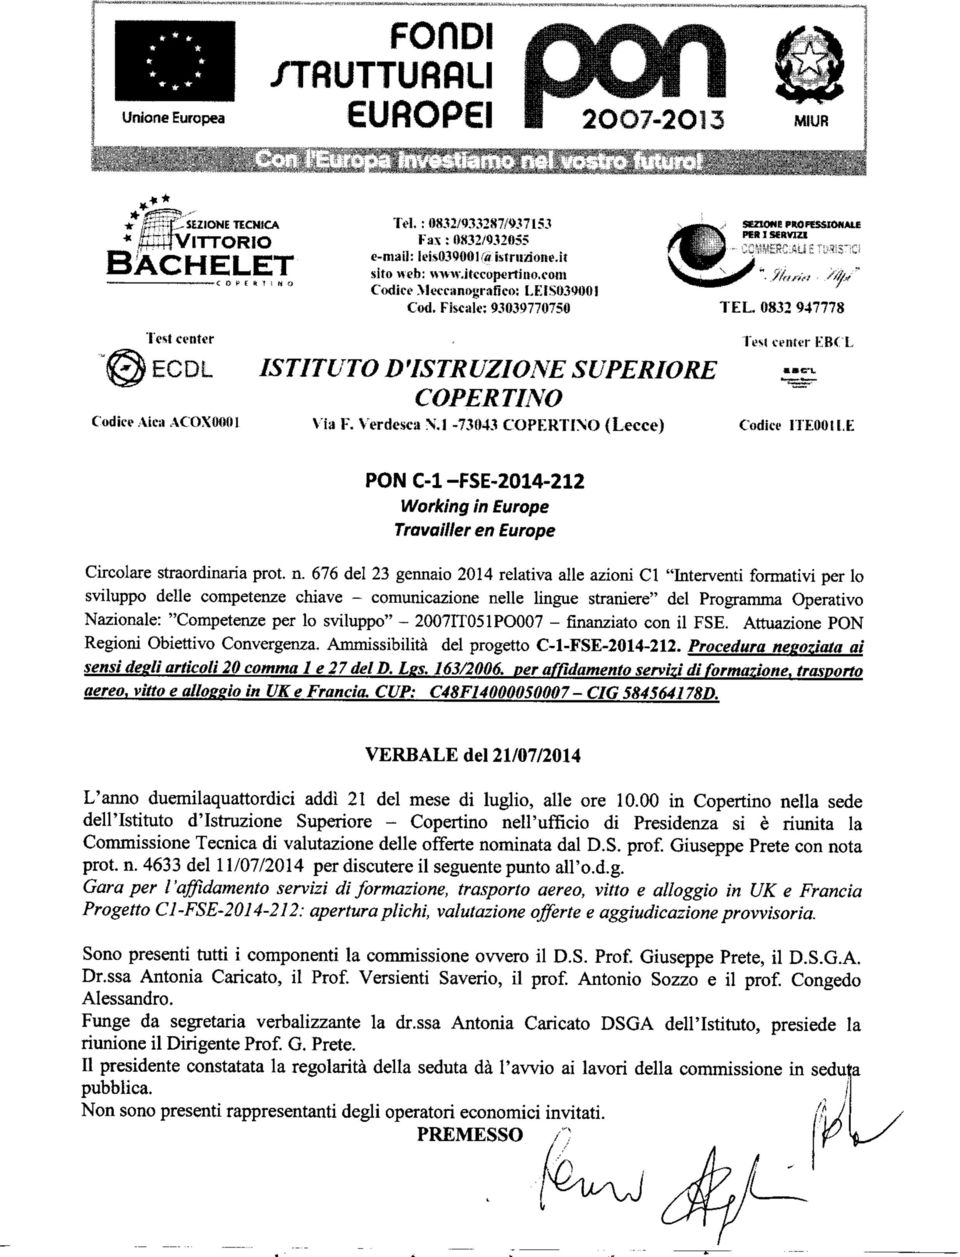 Vira ACOX1 Via F. Verdesca N.l -73(14.1 COPERTIMO (Lecce) Codice 1TEOO.E PONC-l-FSE-214-212 Working in Europe Travailler en Europe Circolare straordinaria prot. n.